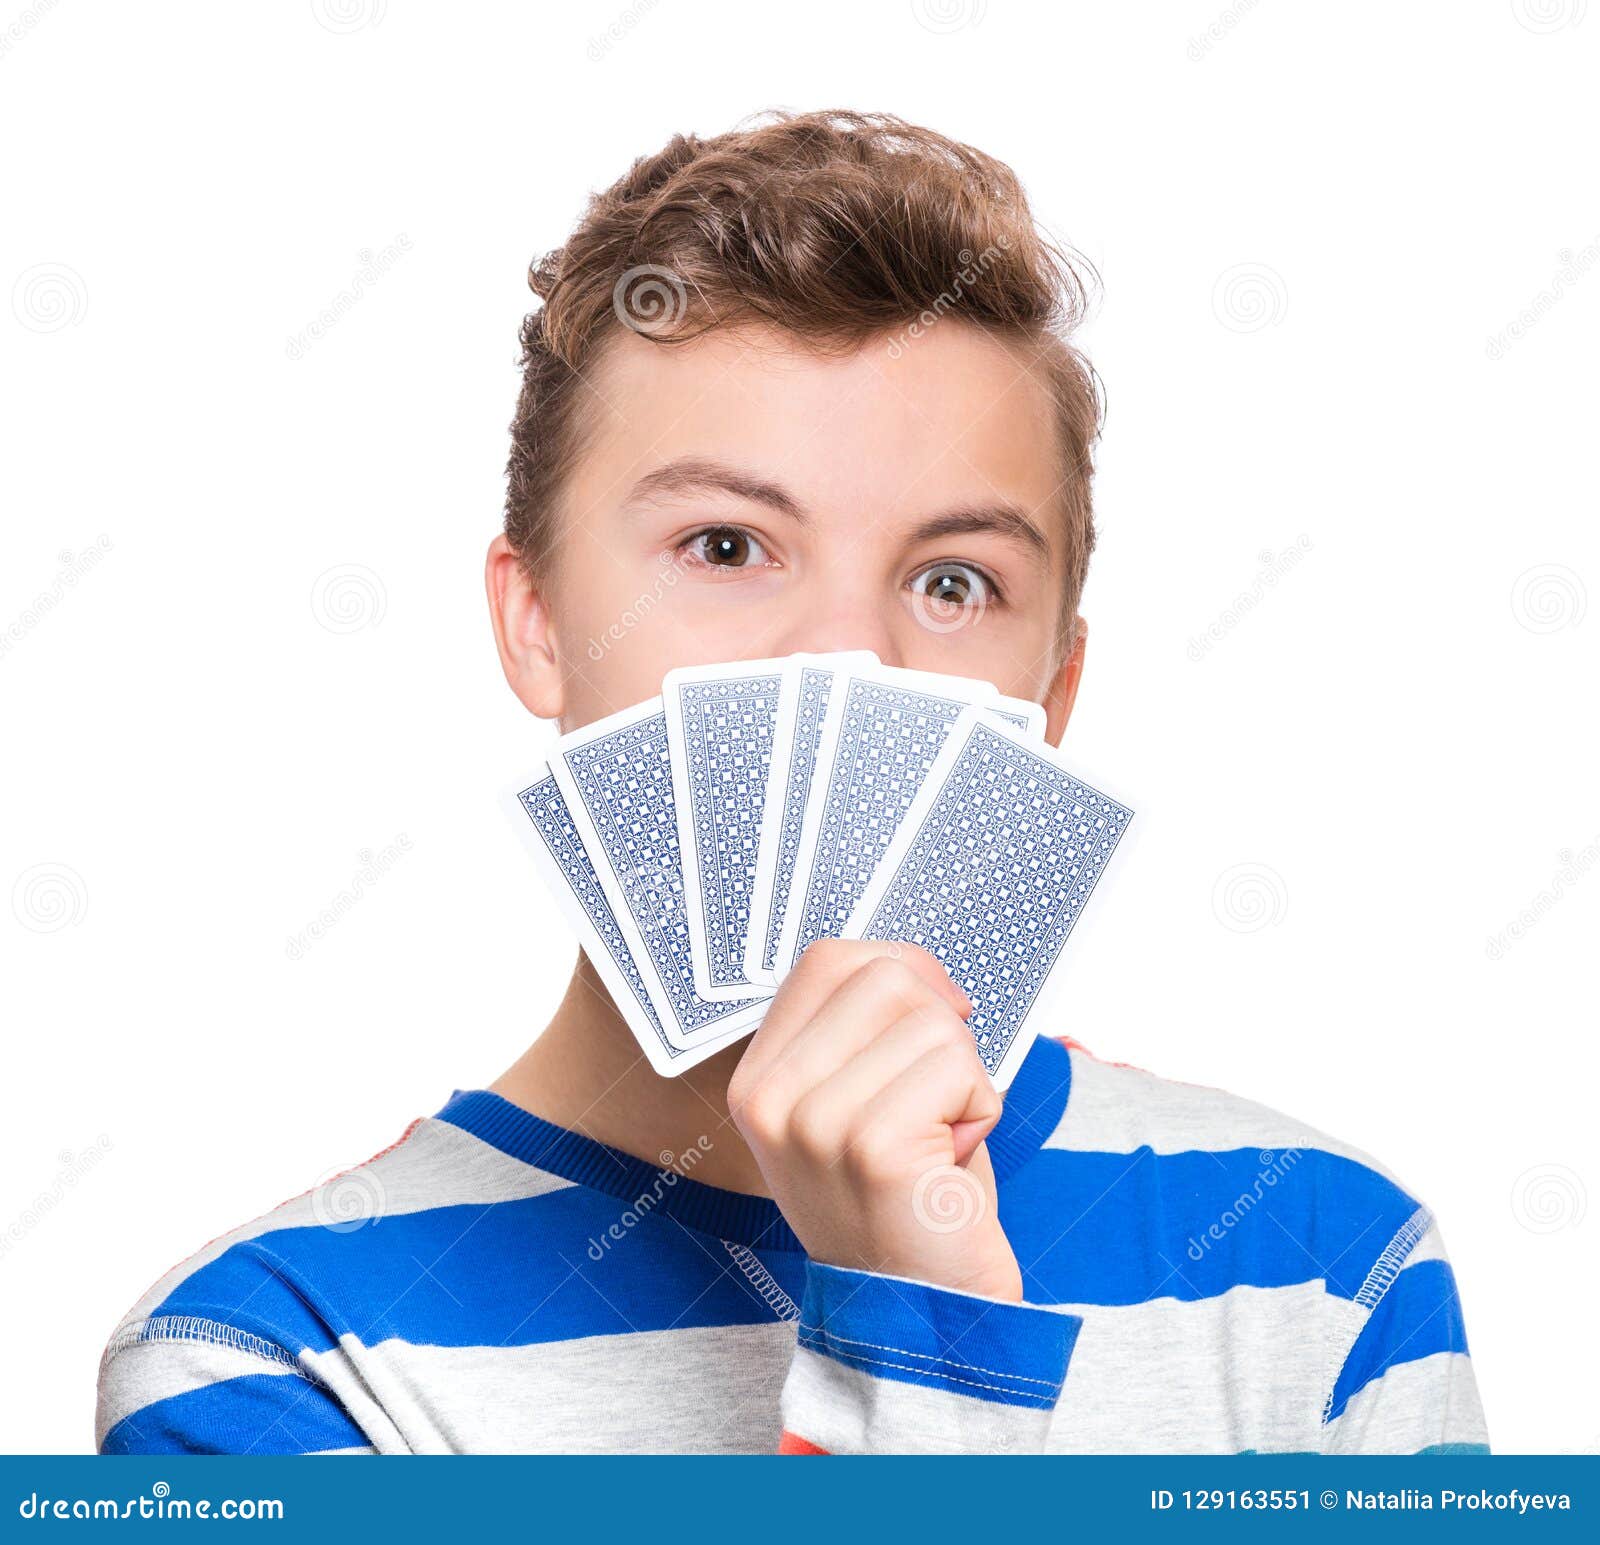 На что играют подростки в карты онлайн казино покер бесплатно